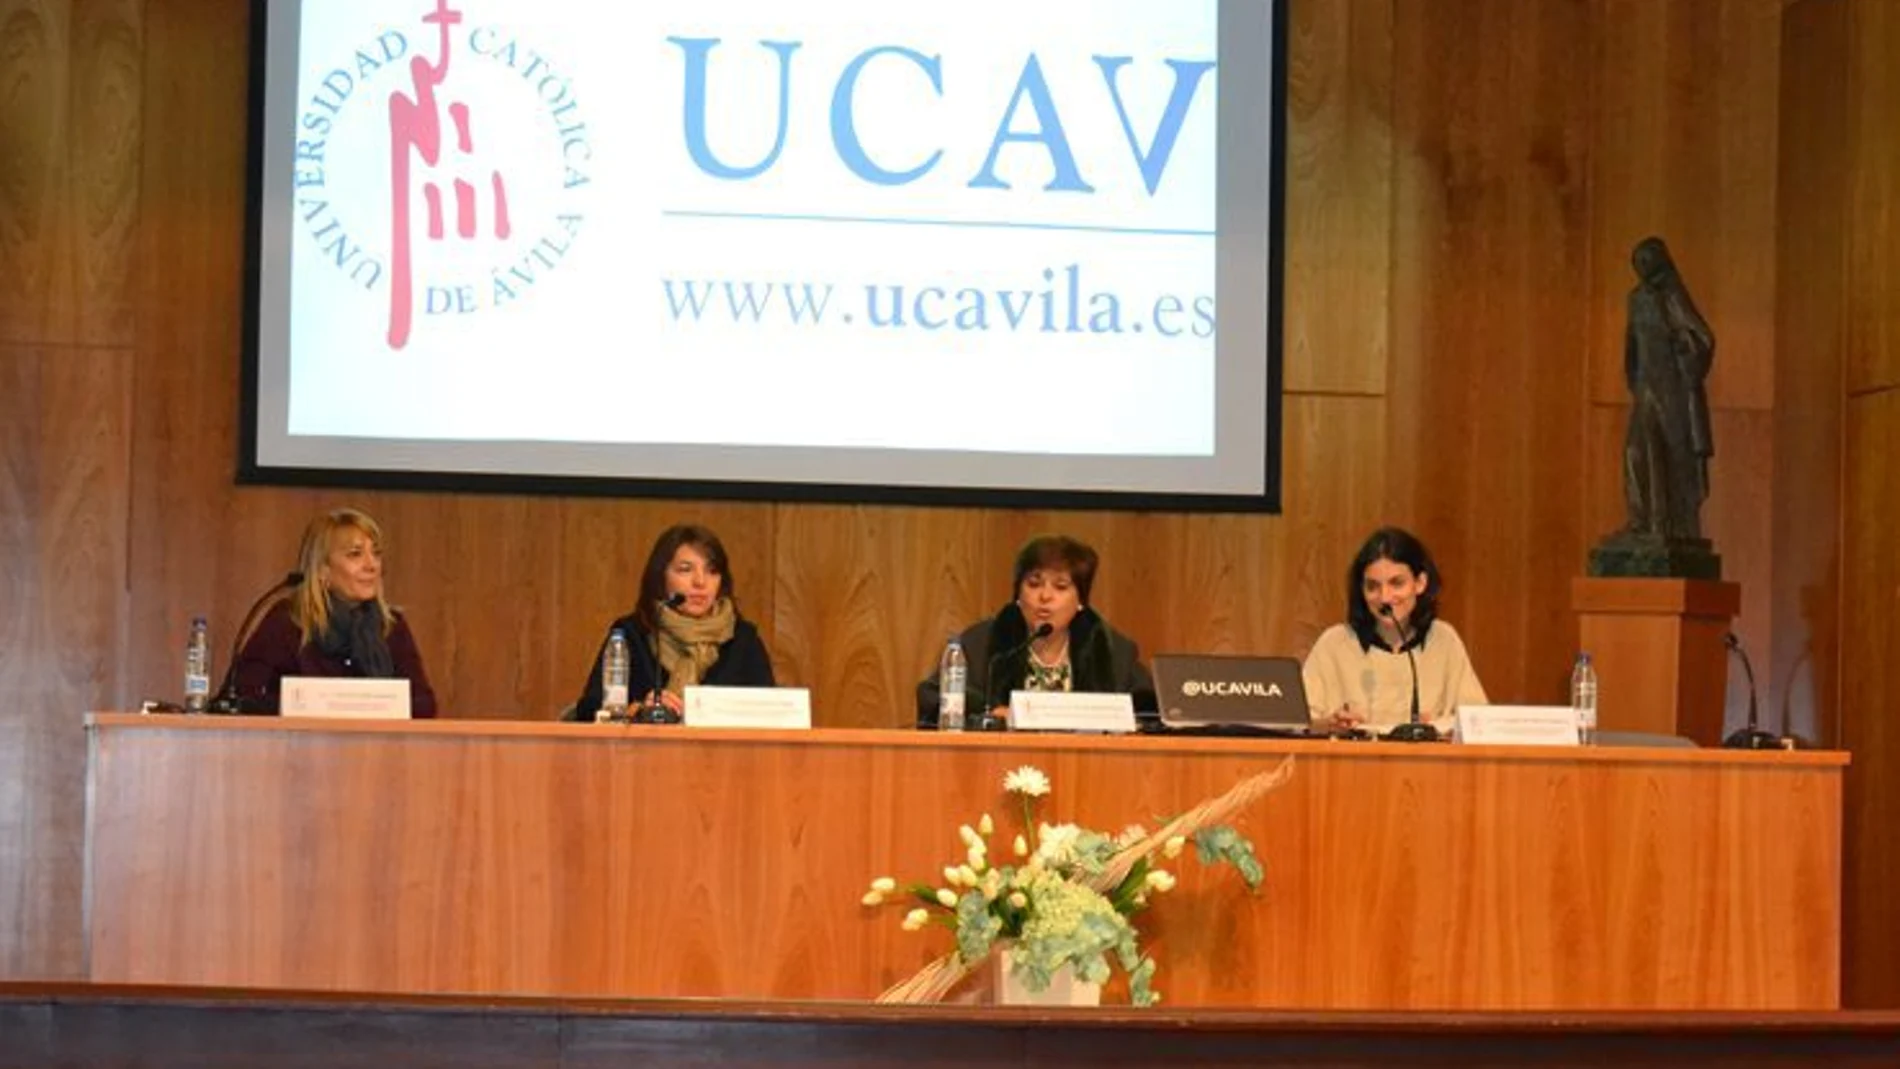 Presentación del programa en la Ucav